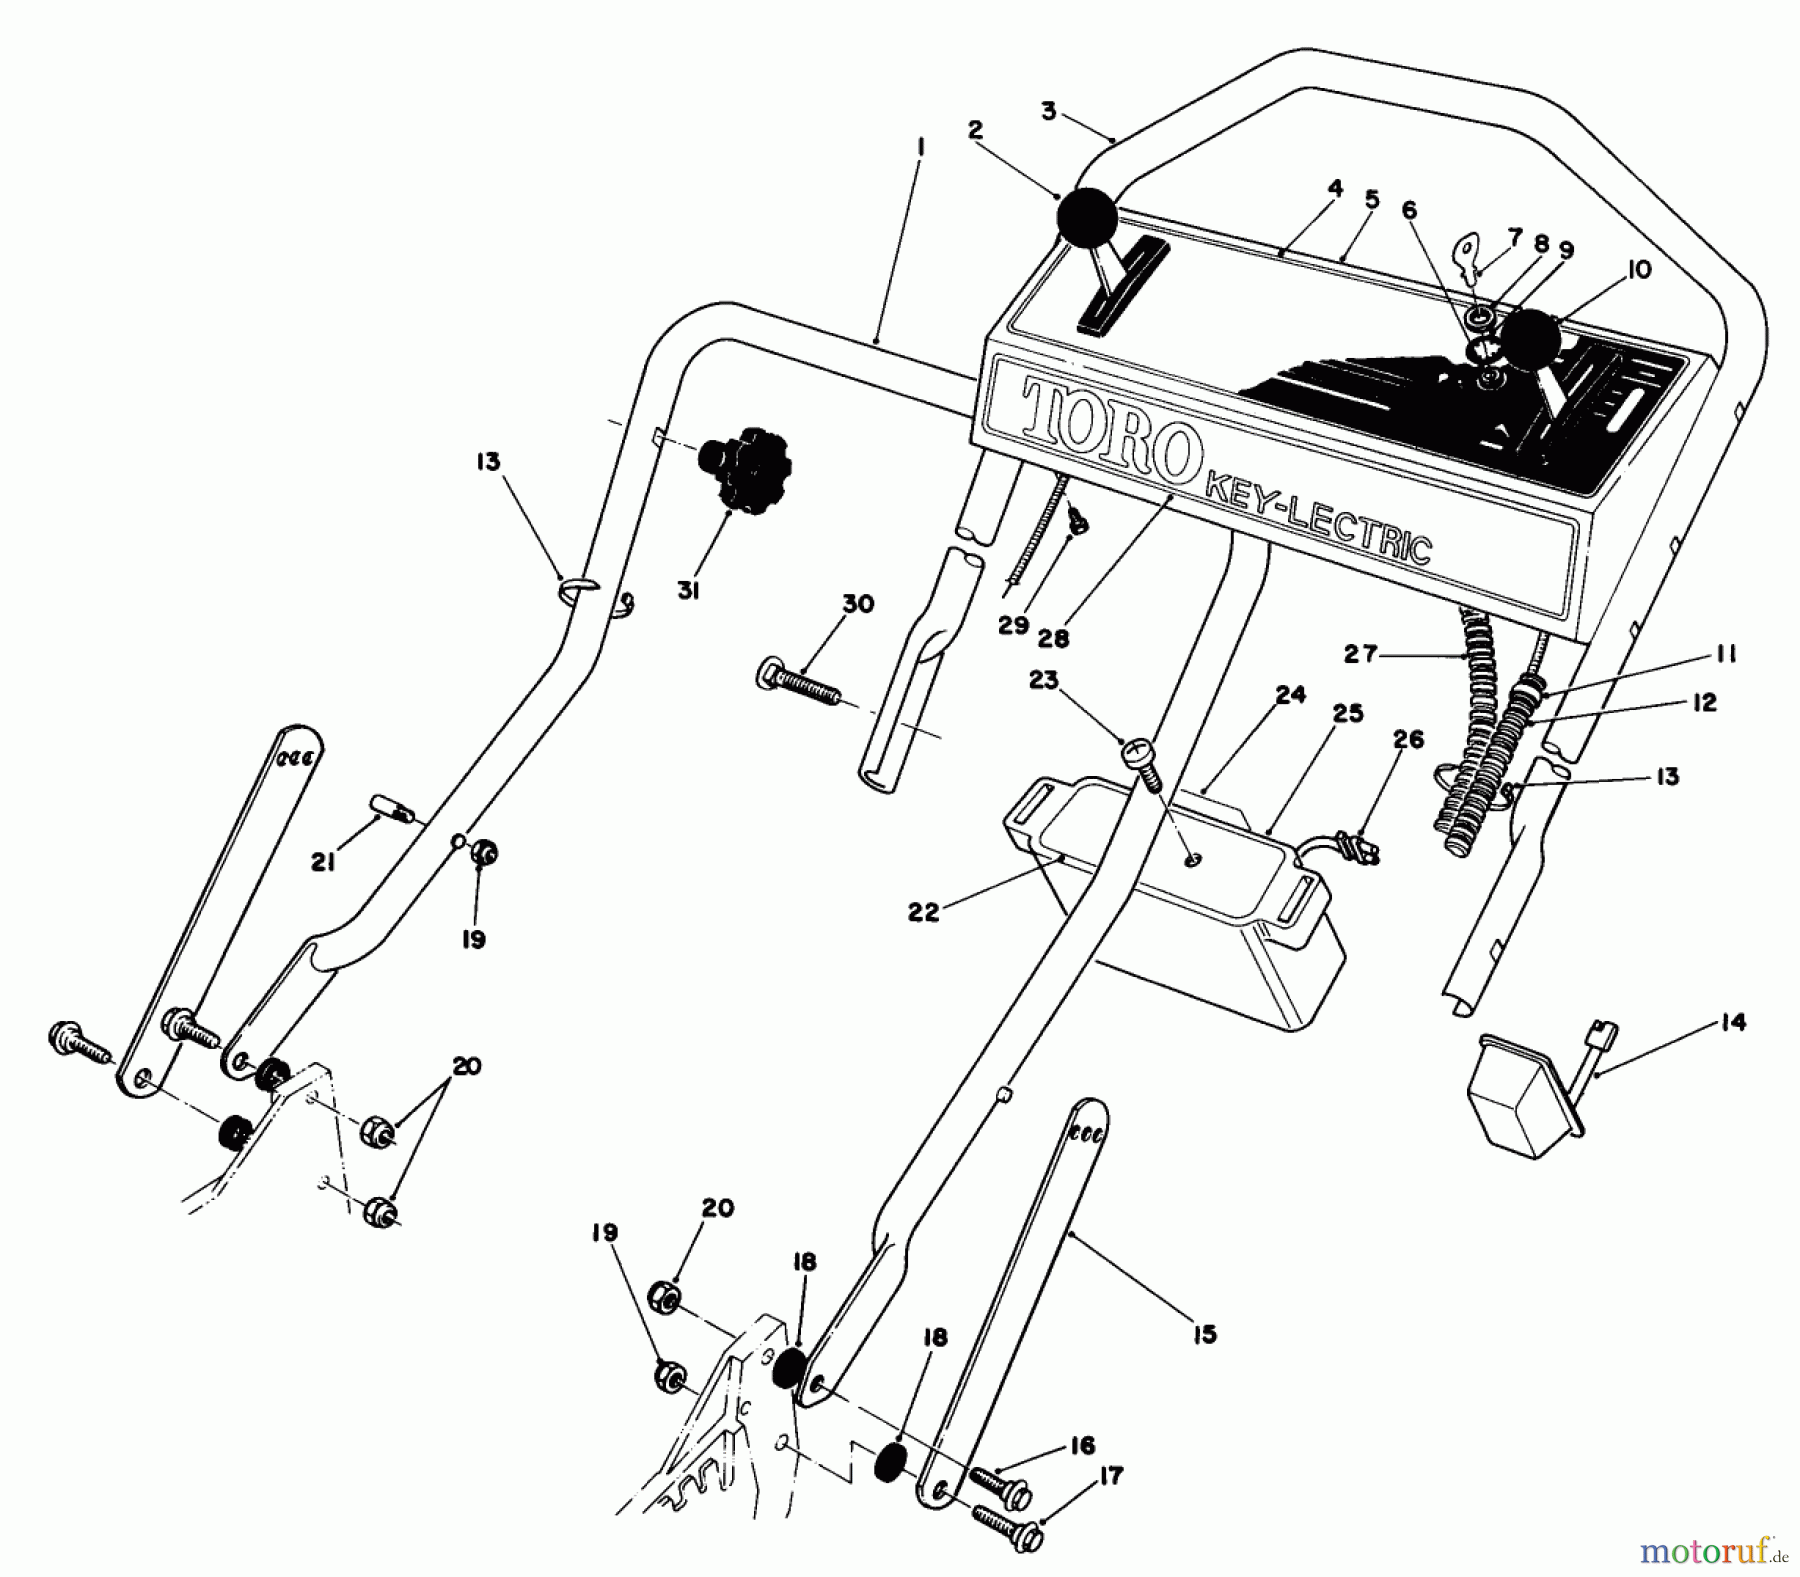  Toro Neu Mowers, Walk-Behind Seite 1 20718 - Toro Lawnmower, 1985 (5000001-5999999) HANDLE ASSEMBLY